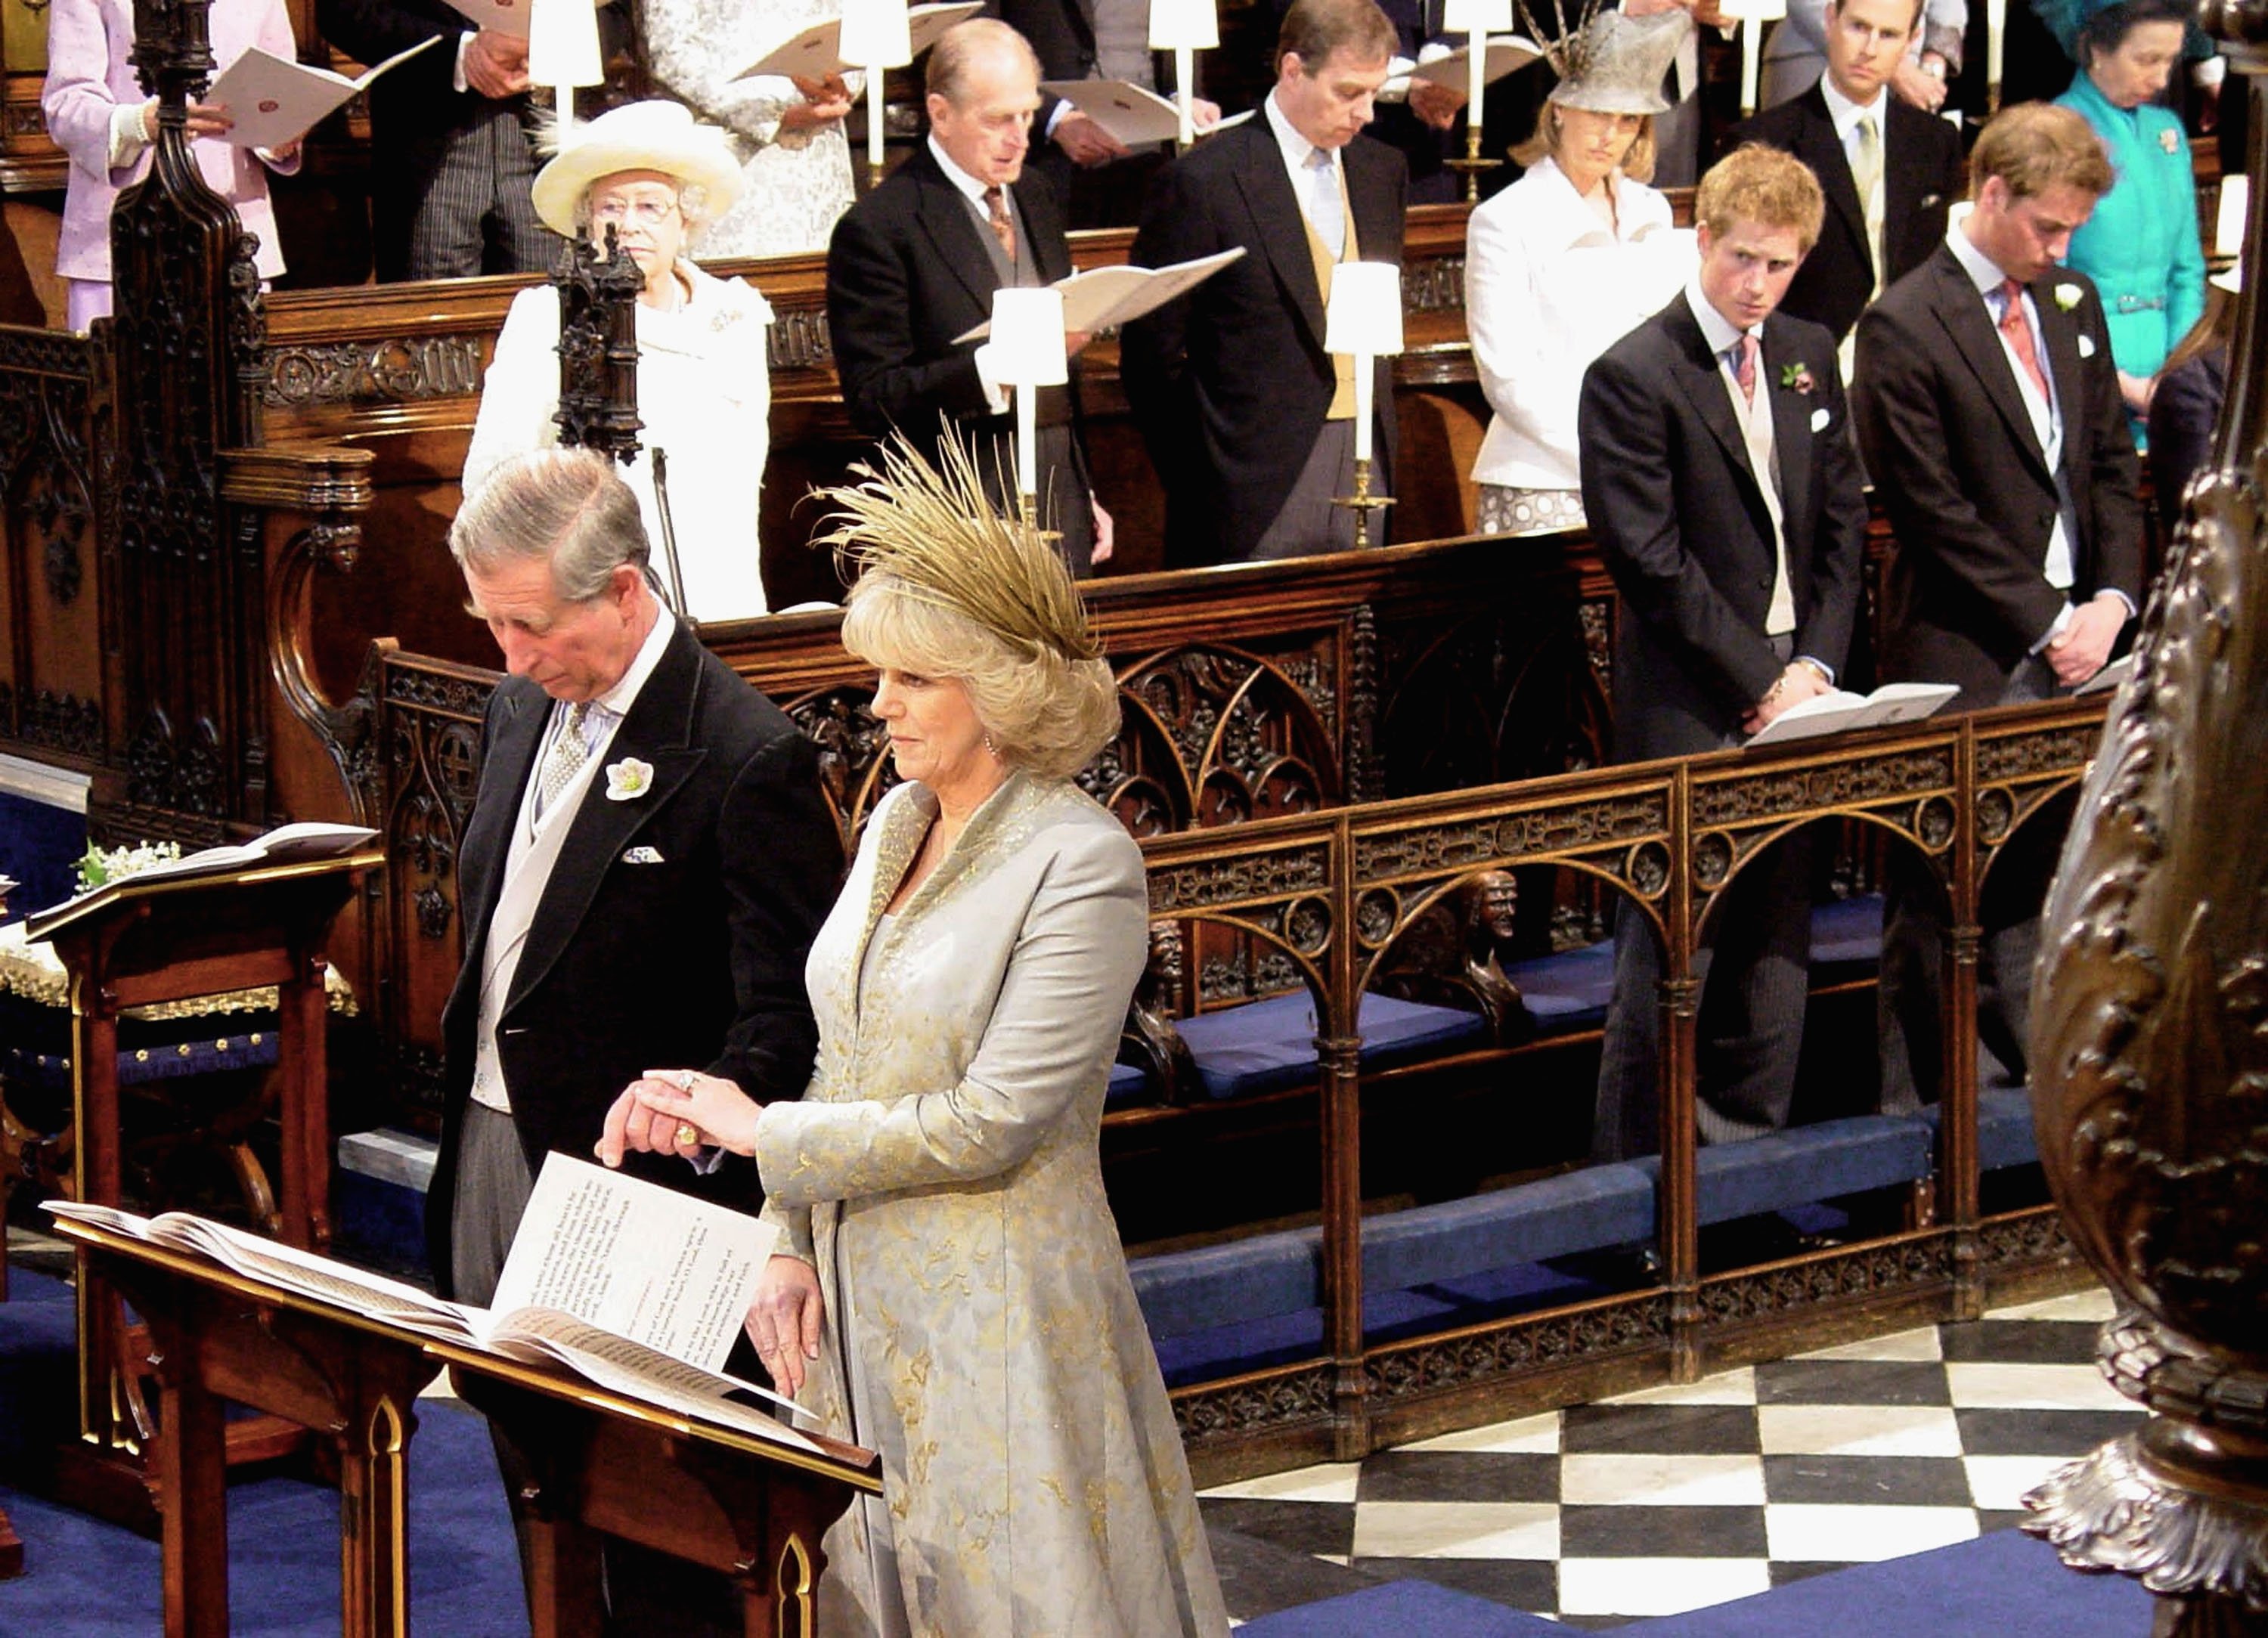 El príncipe Charles y Camilla Parker Bowles asisten al Servicio de Oración y Dedicación que bendice su matrimonio en el Castillo de Windsor el 9 de abril de 2005 en Berkshire, Inglaterra. | Foto: Getty Images